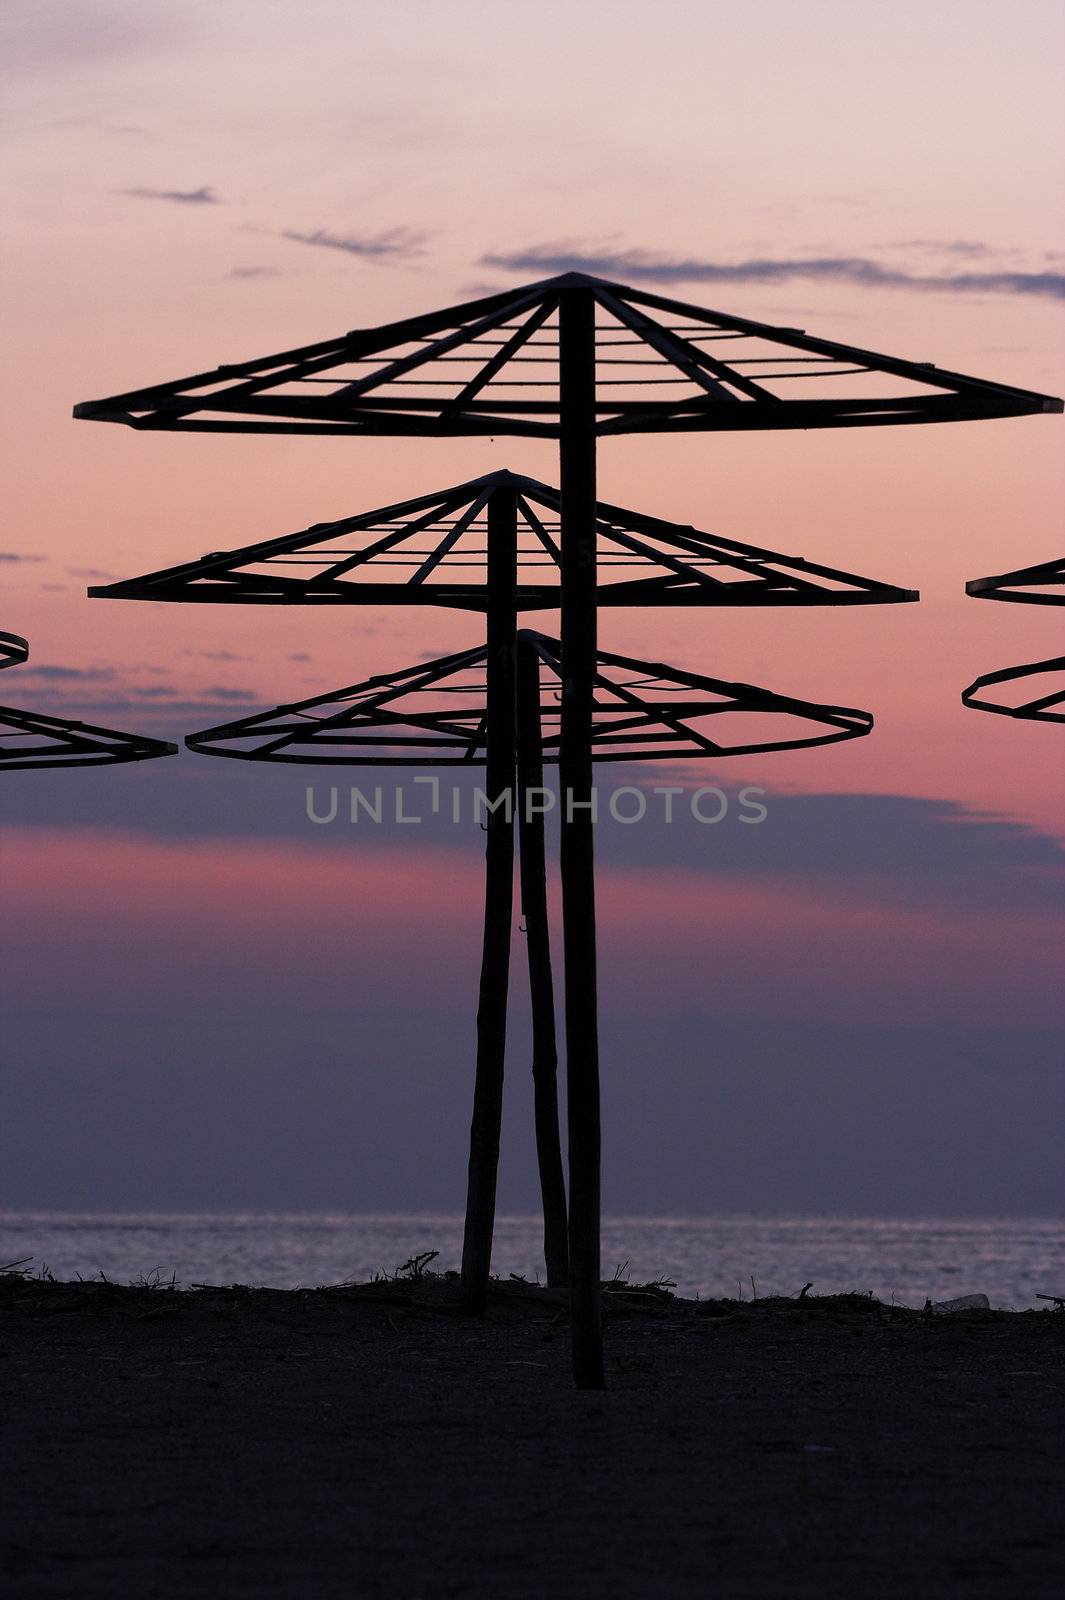 silhouettes of beach umbrellas at sunrise